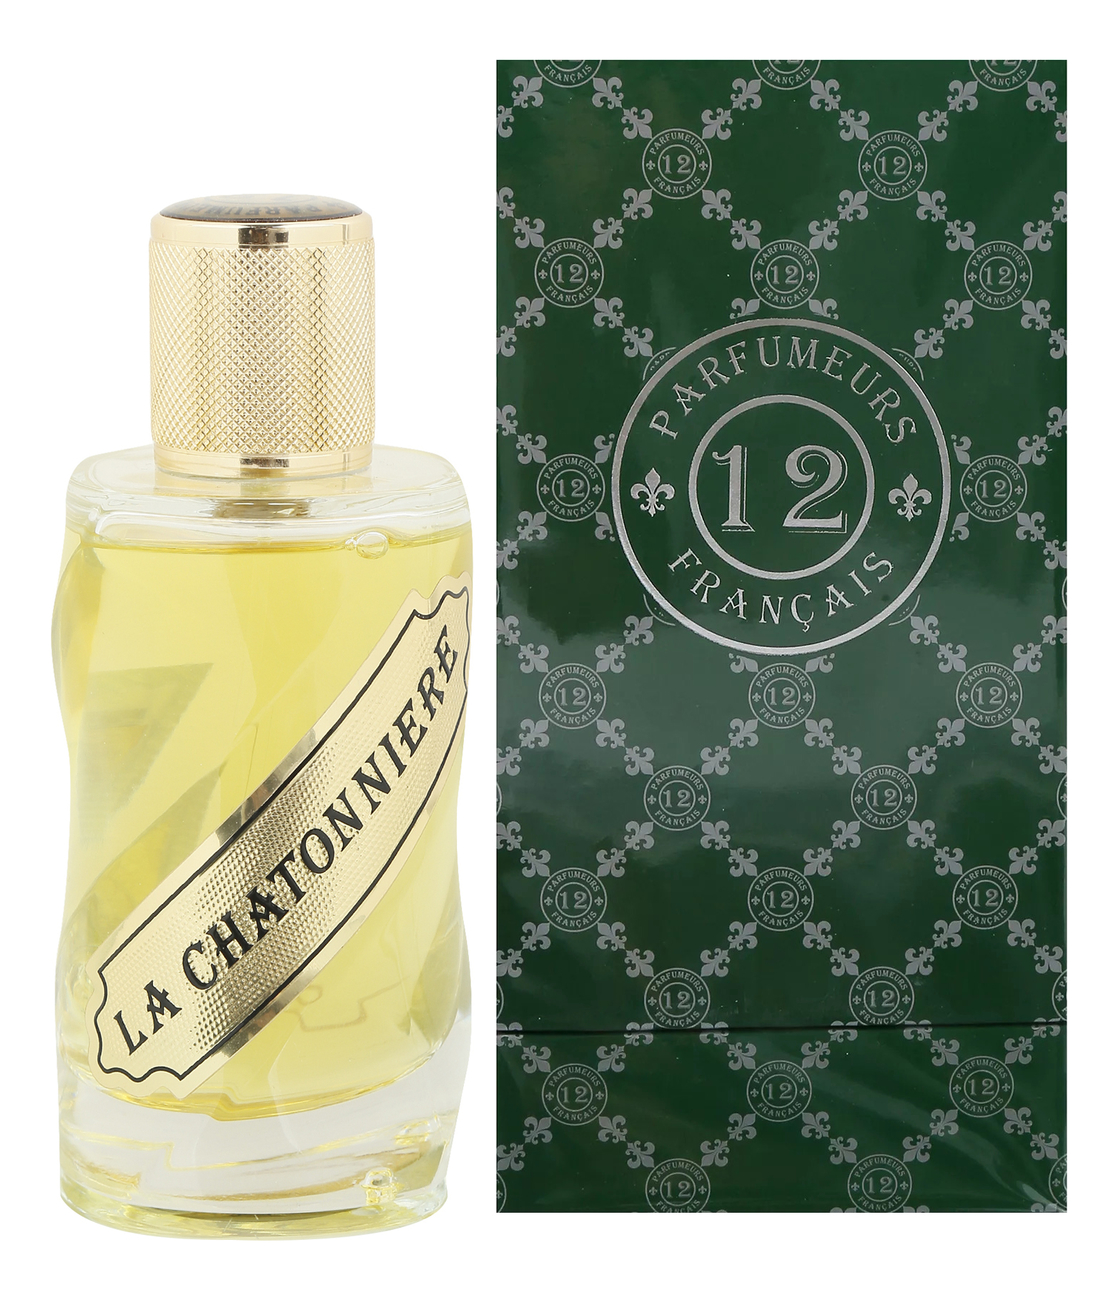 Купить La Chatonniere: парфюмерная вода 100мл, Les 12 Parfumeurs Francais